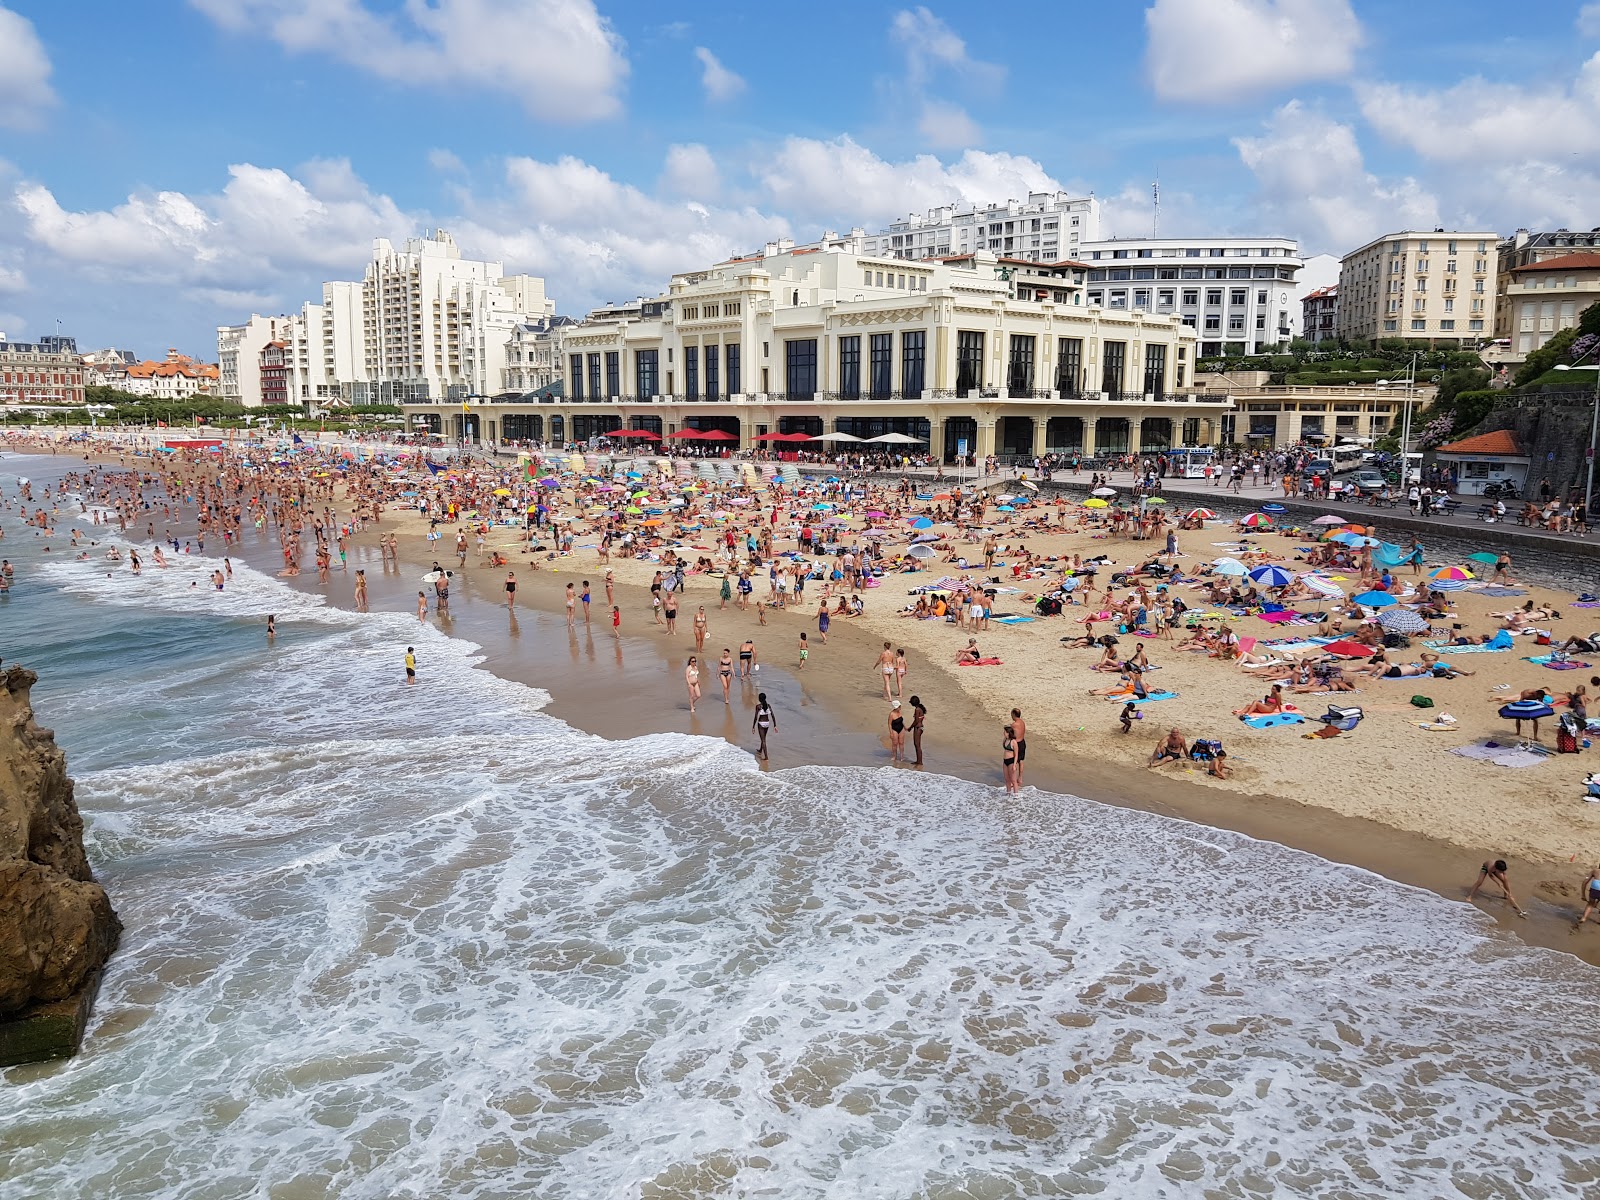 Fotografija Plage de Biarritz z prostorna obala